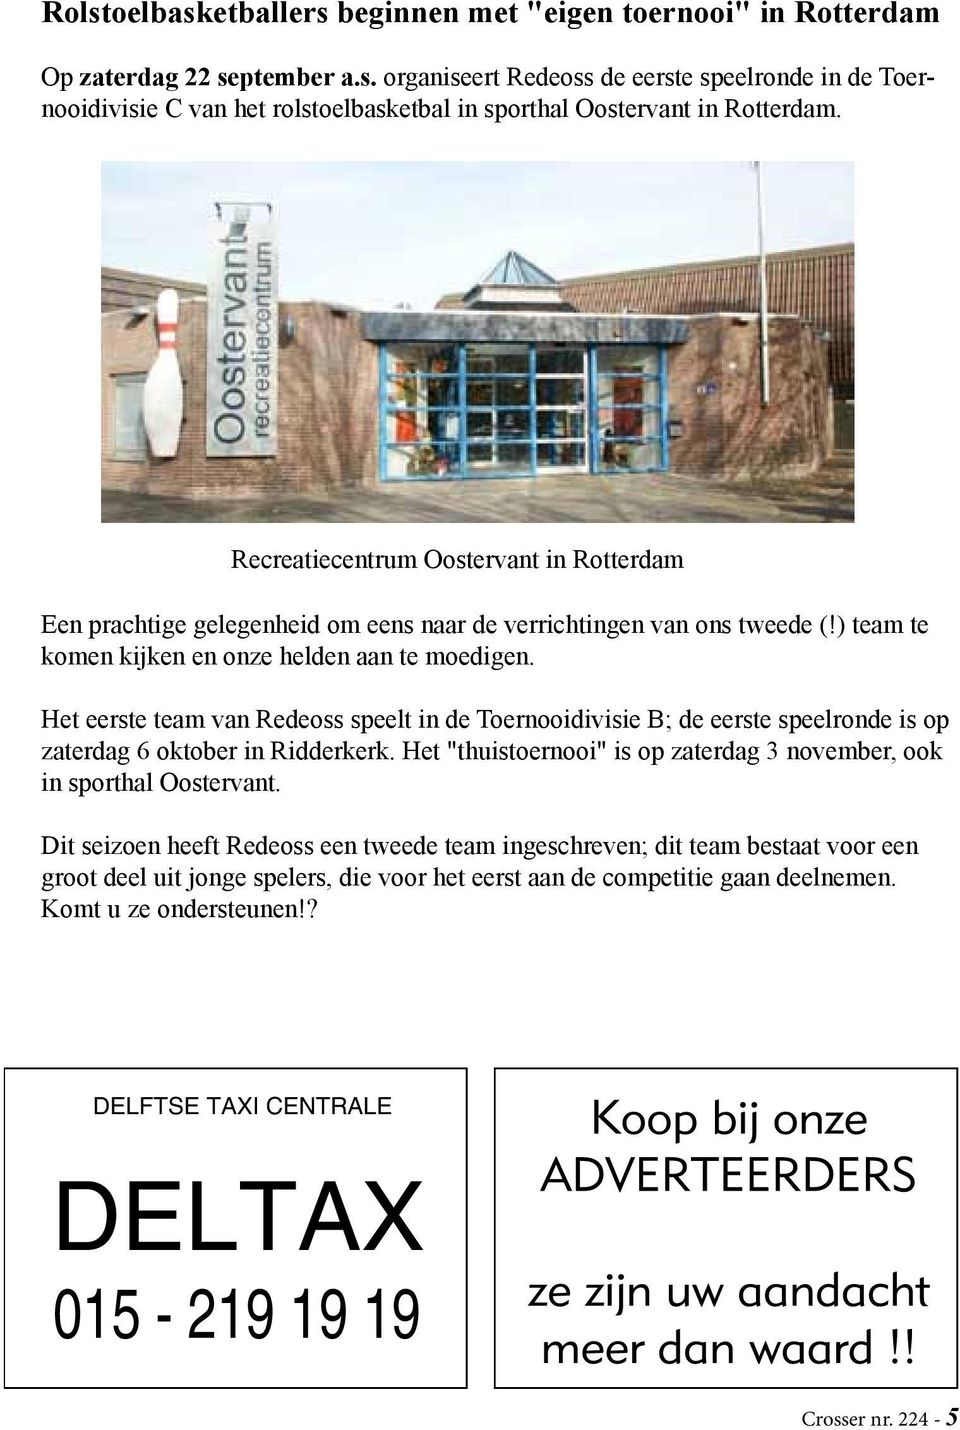 Het eerste team van Redeoss speelt in de Toernooidivisie B; de eerste speelronde is op zaterdag 6 oktober in Ridderkerk. Het "thuistoernooi" is op zaterdag 3 november, ook in sporthal Oostervant.